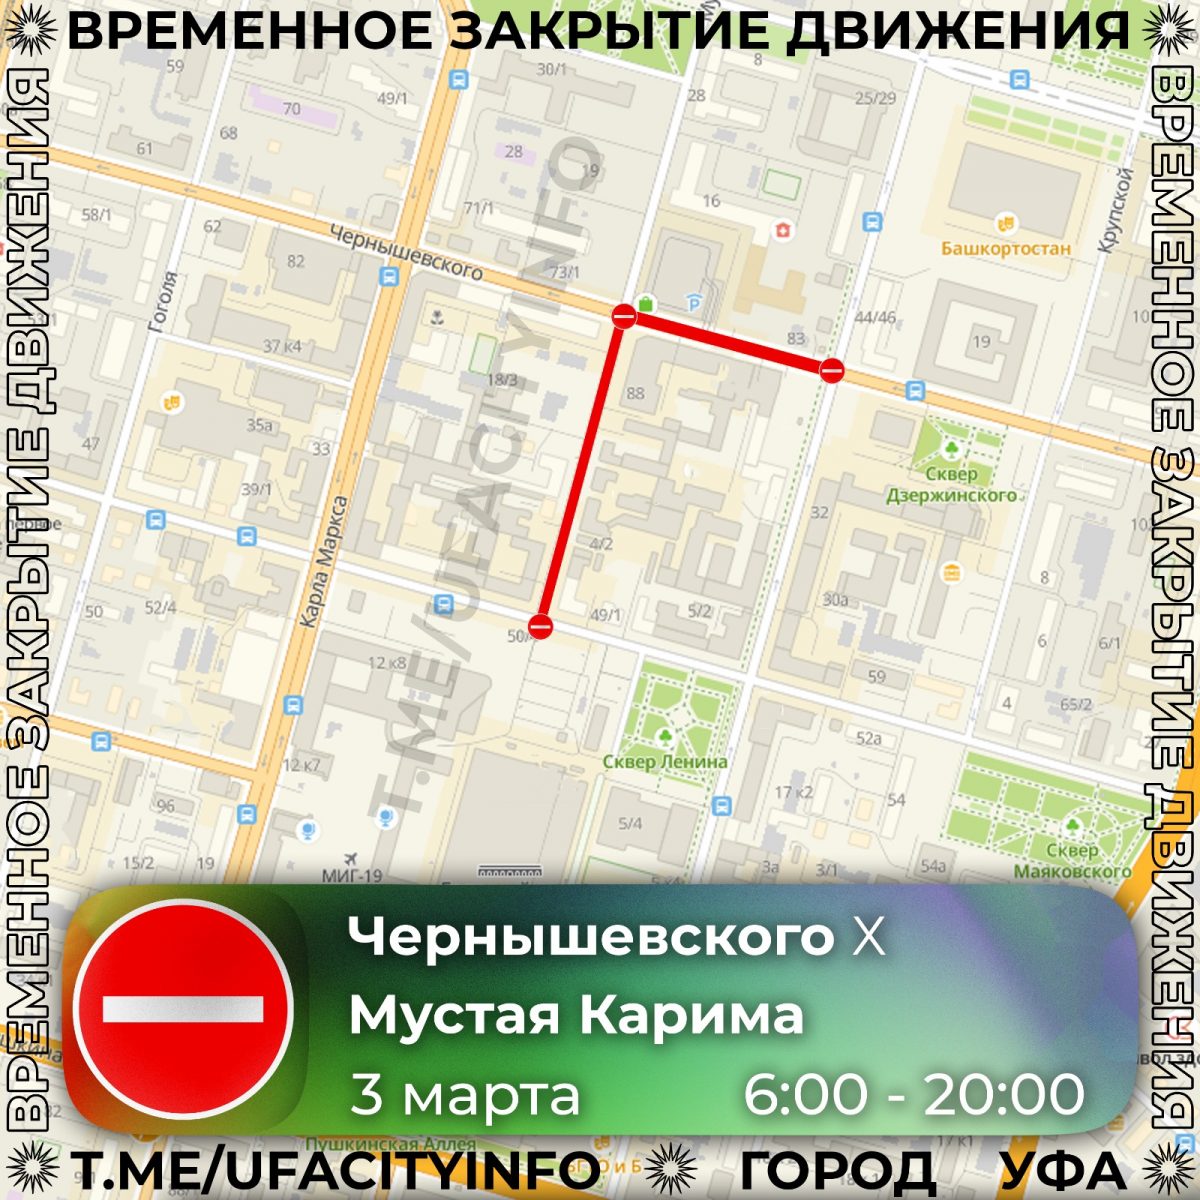 В Уфе с 1 по 3 марта перекроют улицы в центре